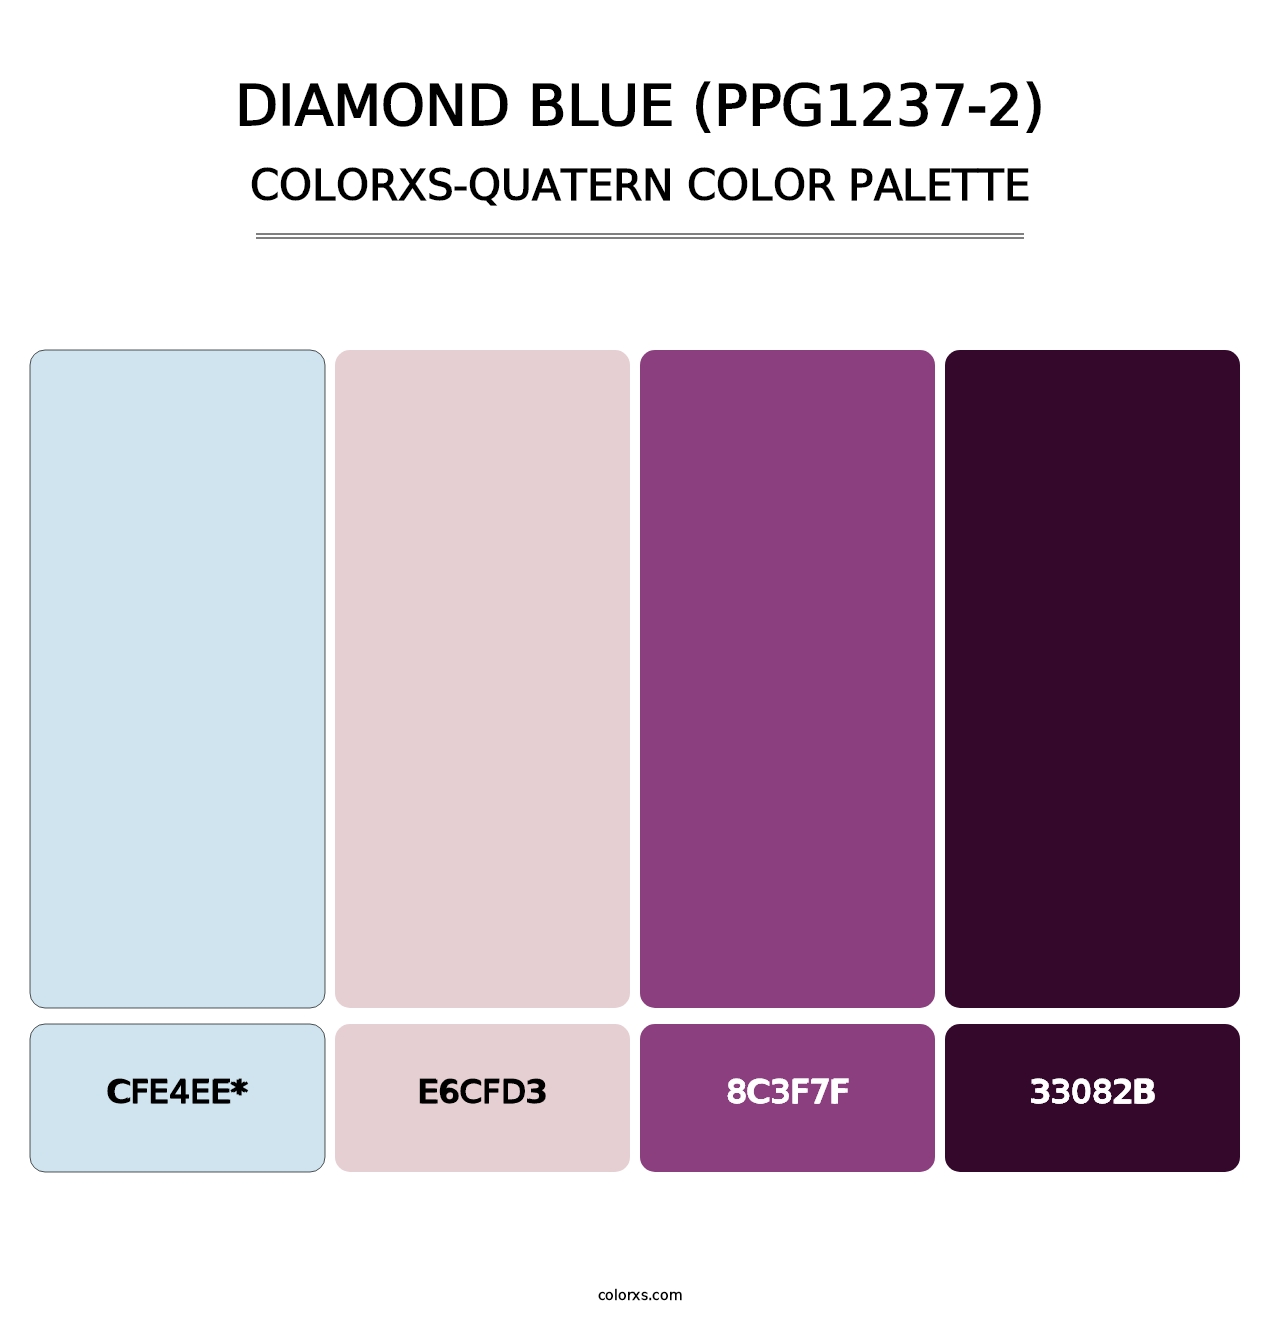 Diamond Blue (PPG1237-2) - Colorxs Quatern Palette